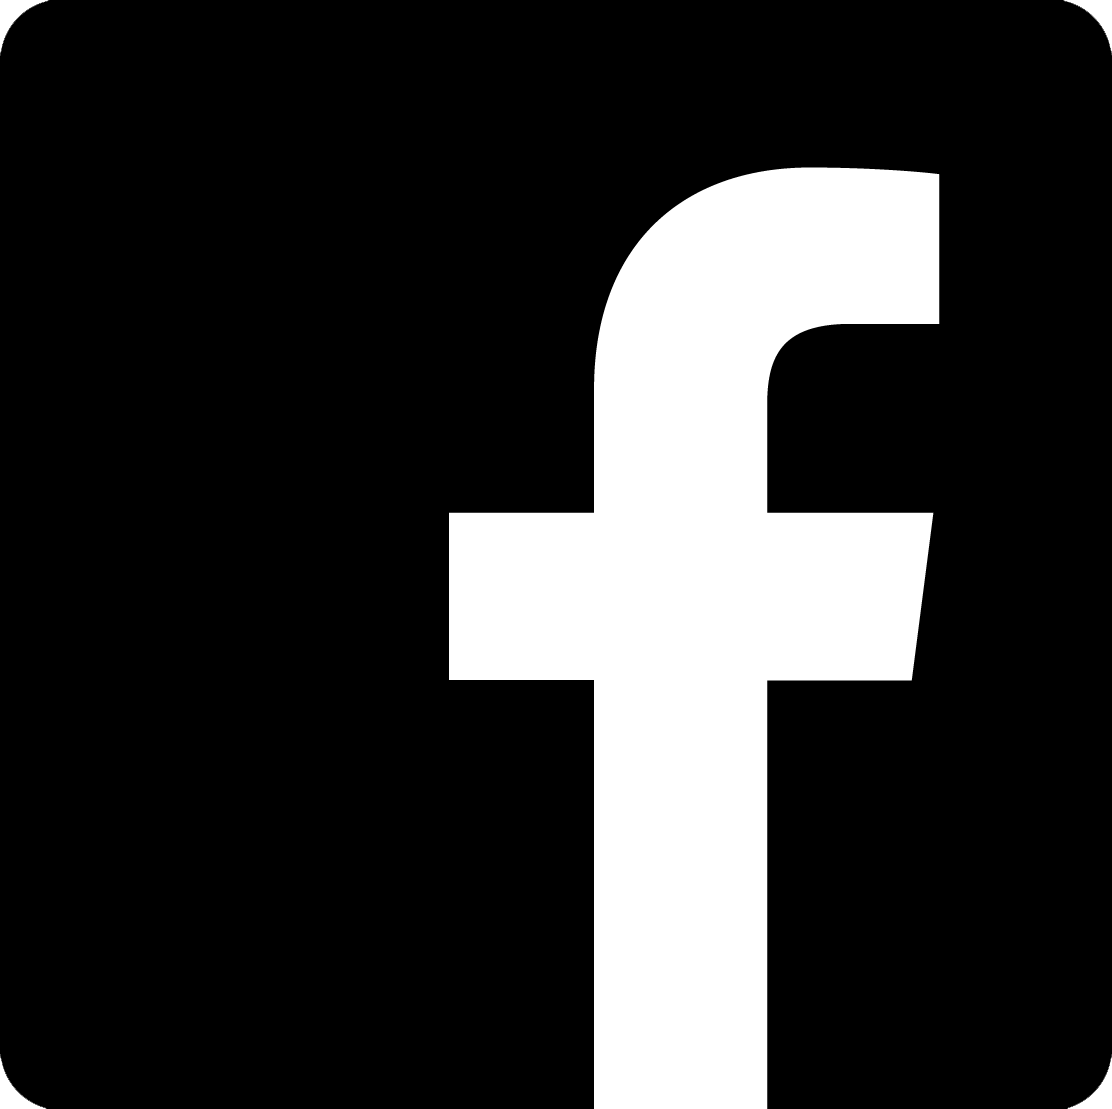 Facebook logo></a>
<p1 style=